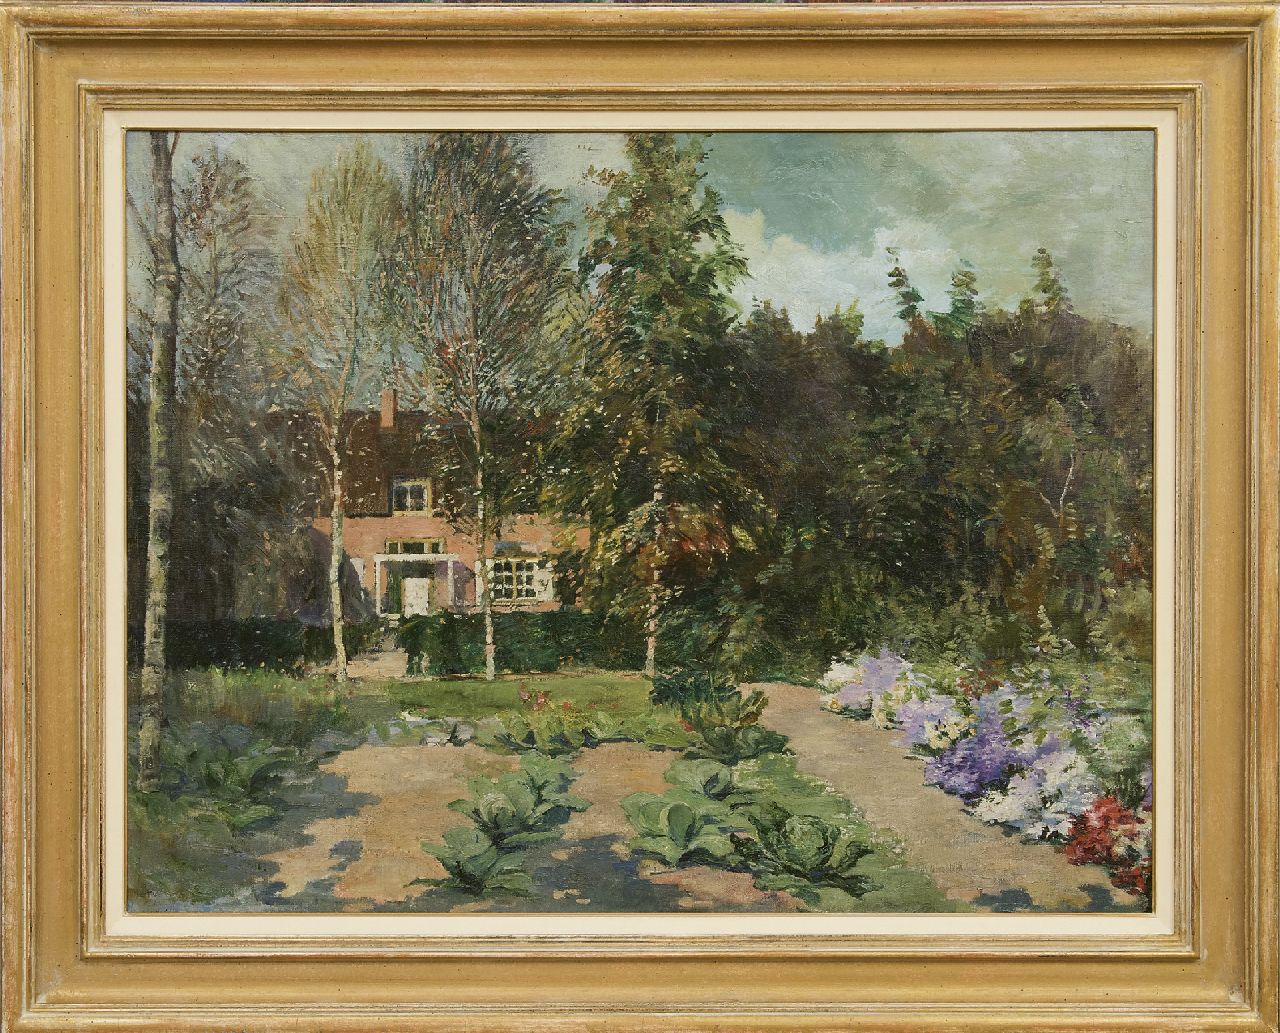 Schagen G.F. van | Gerbrand Frederik van Schagen, Landhuis in de zomer, olieverf op doek 65,3 x 85,7 cm